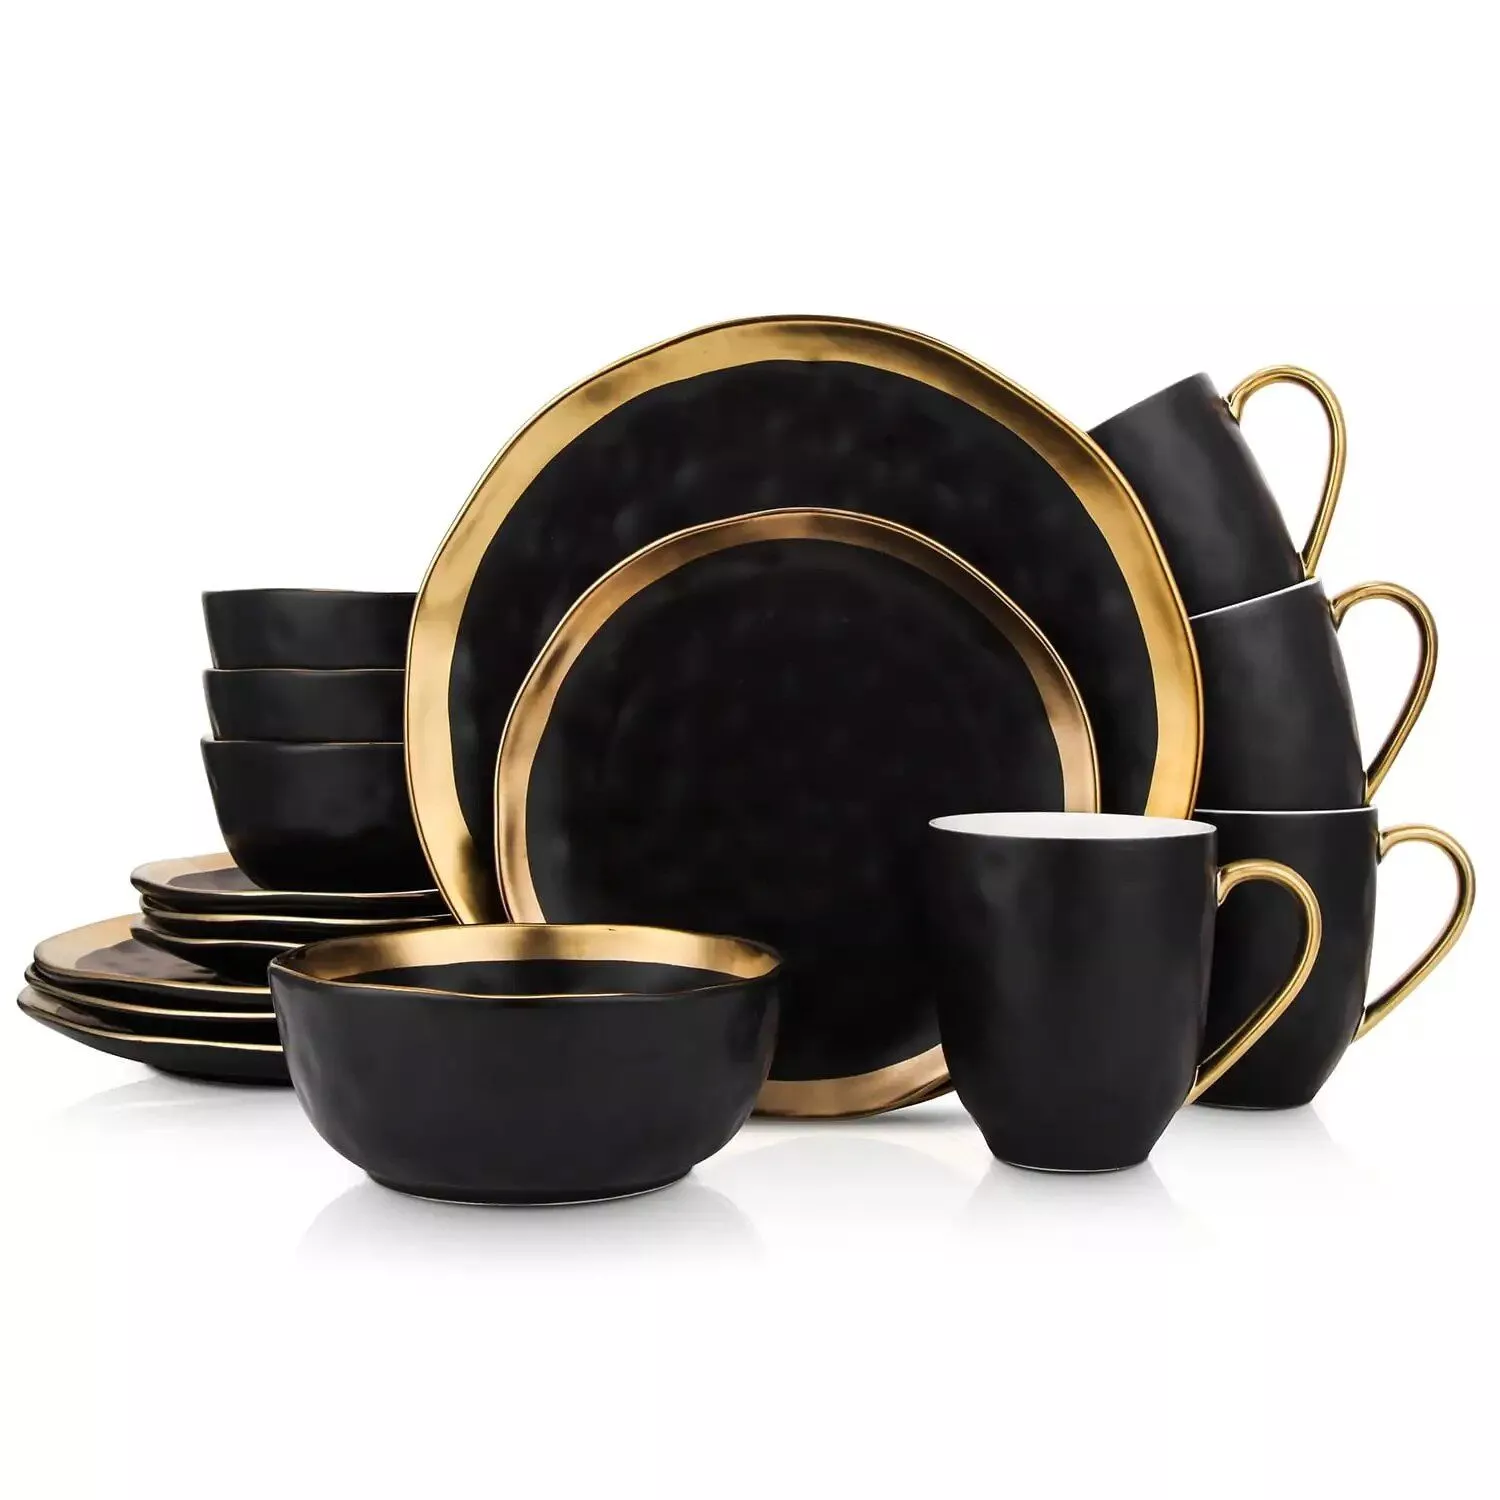 Elegant 16-Piece Gold-Rimmed Black Porcelain Dinnerware Set